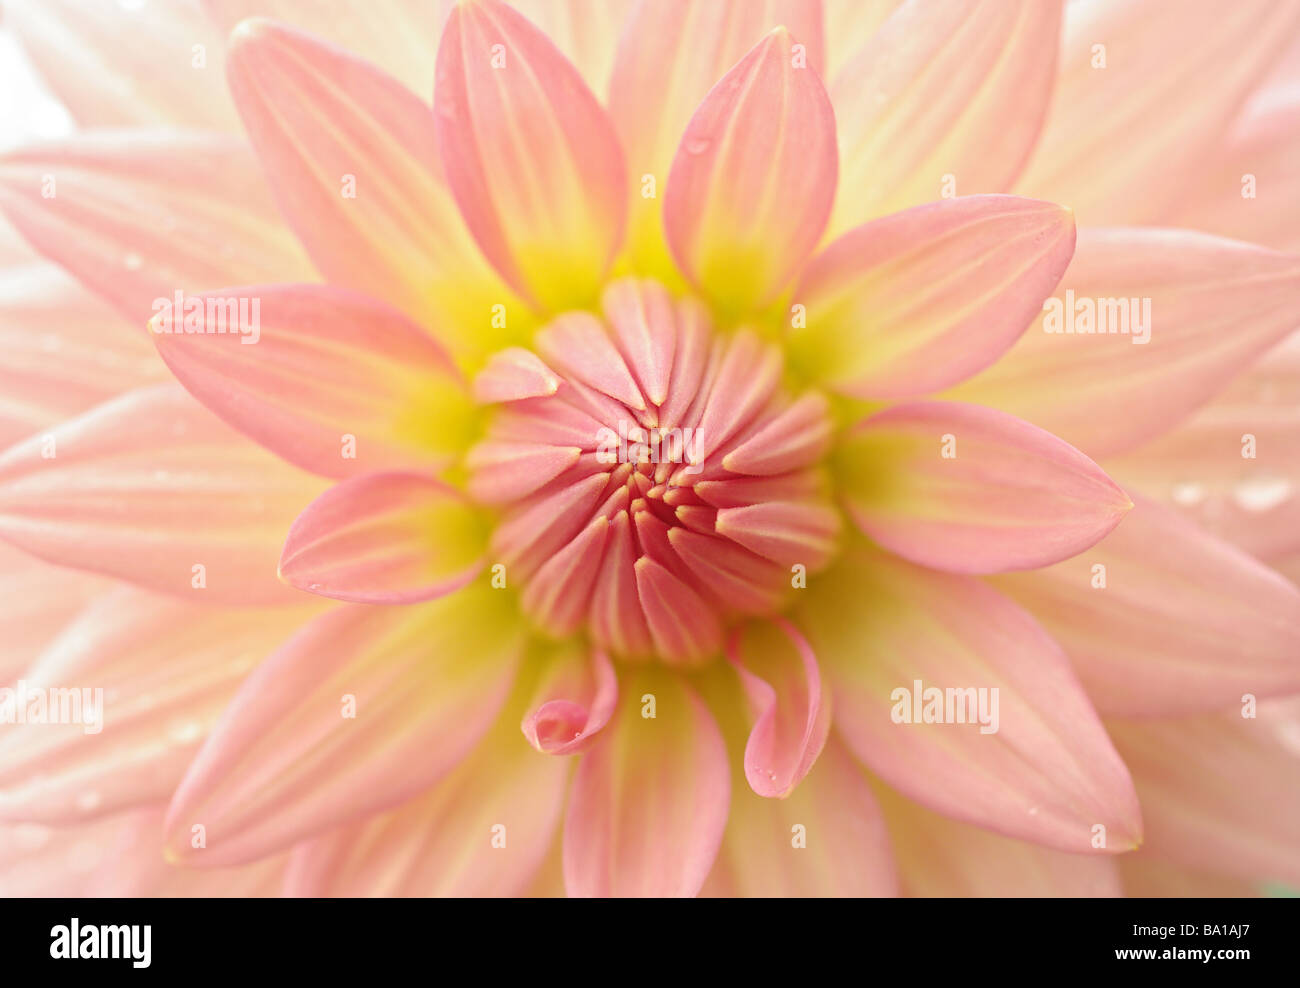 Molto strette dof rende questo un perfetto bellissimo fiore dahlia Foto Stock